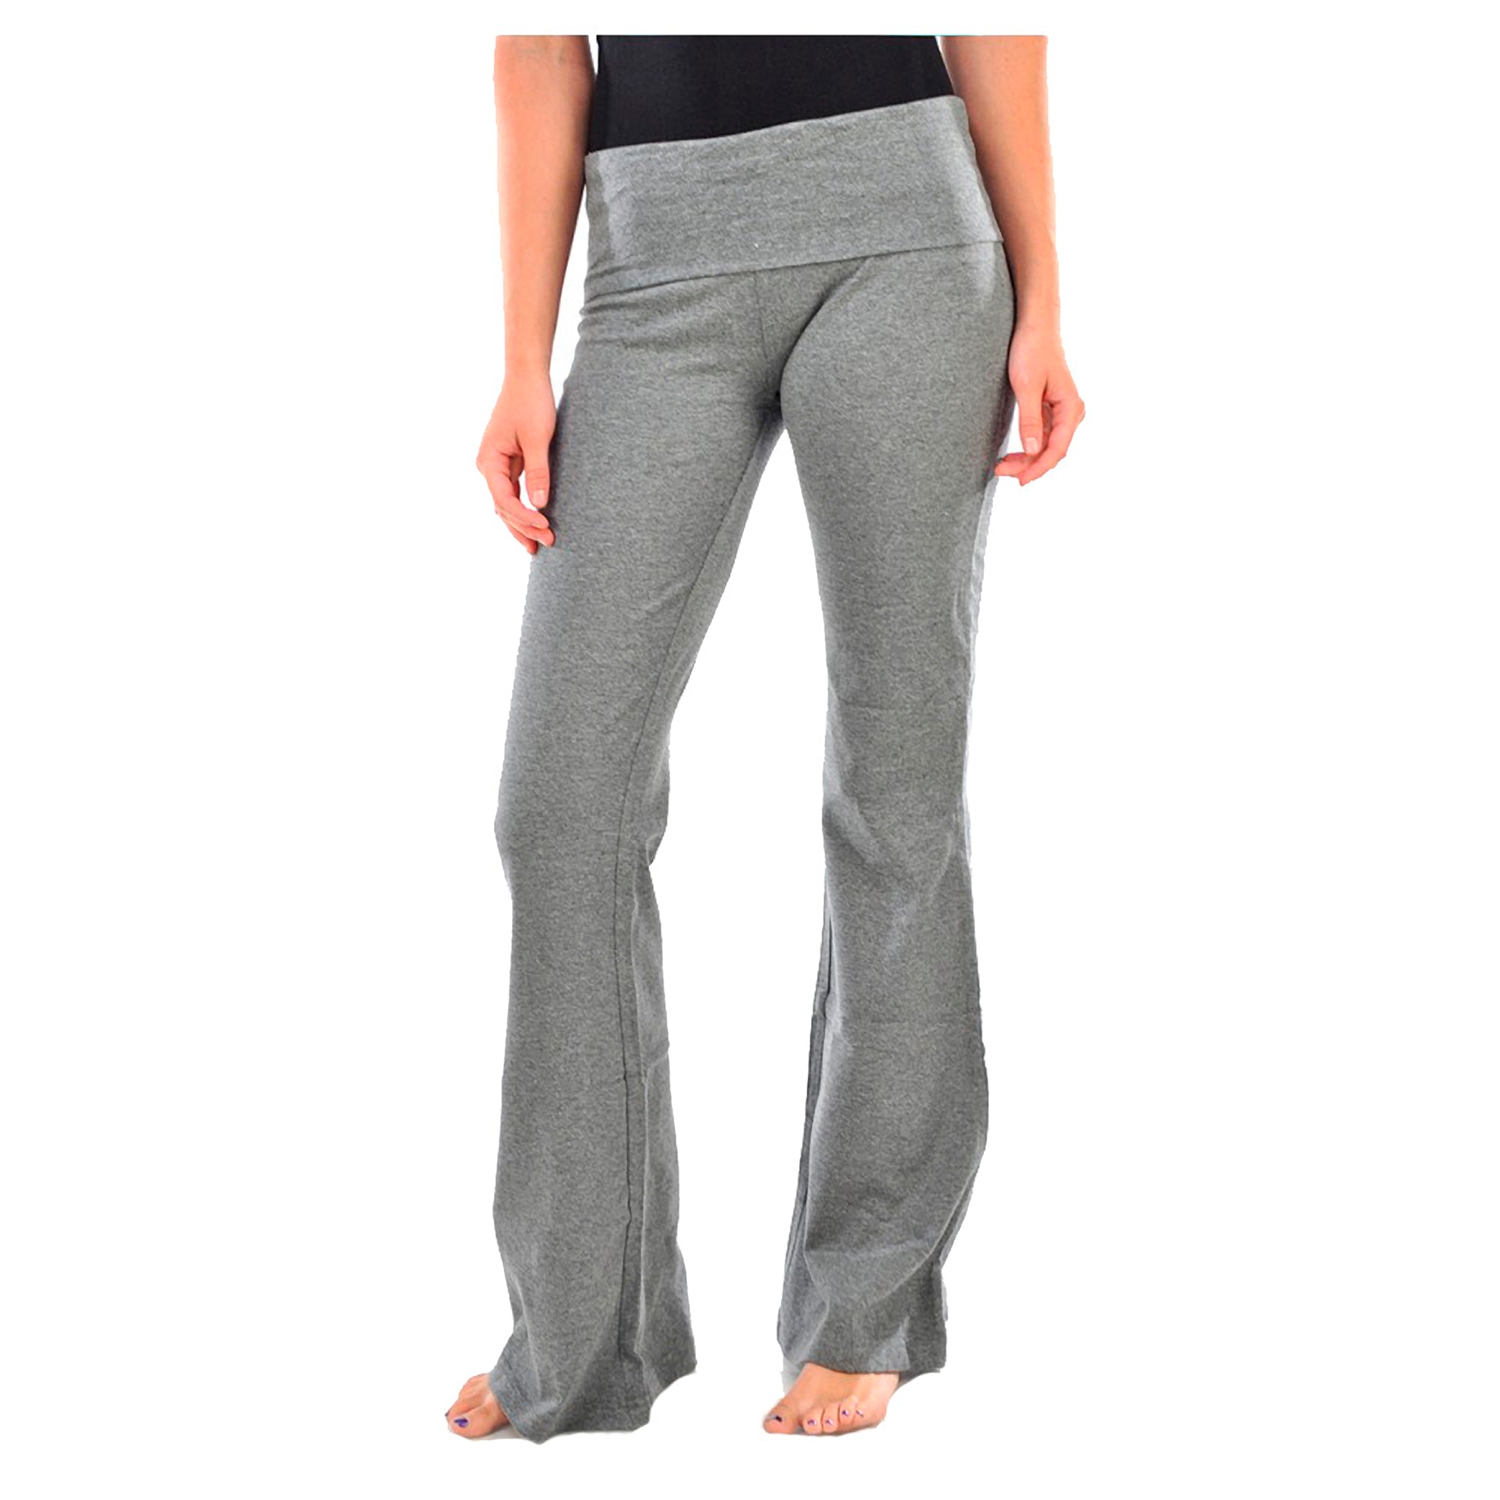 Ladies Yoga Pants -YP1000 - image 1 of 2